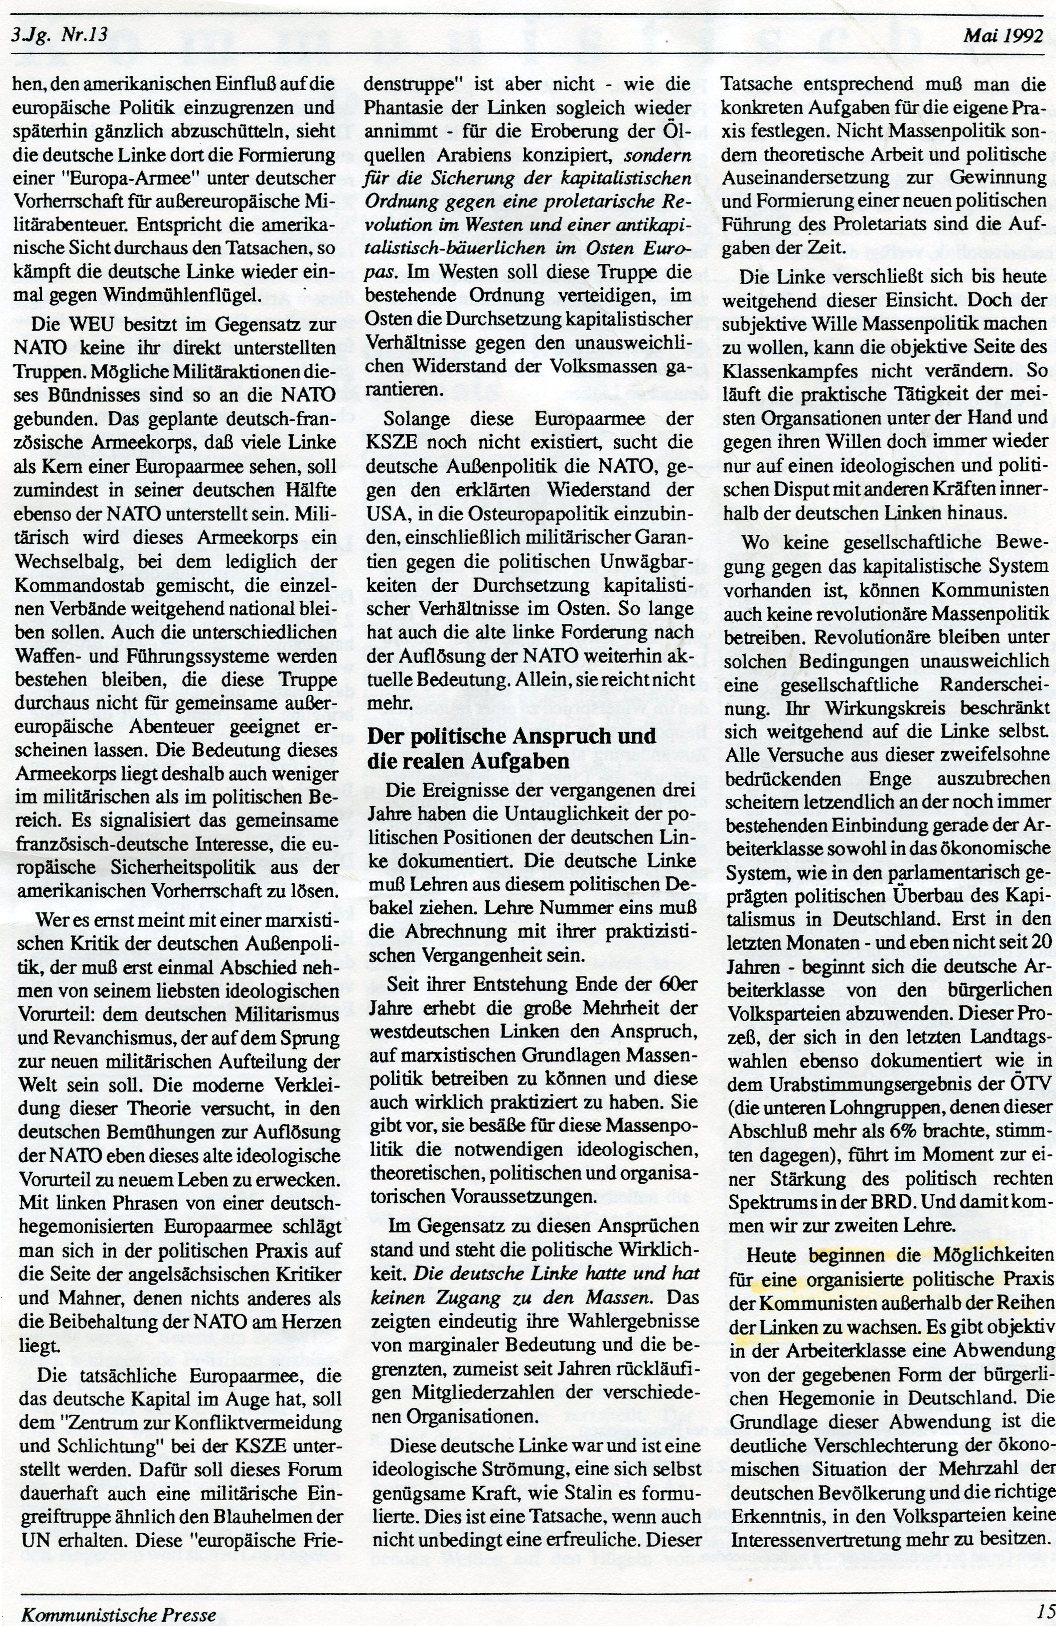 Gelsenkirchen_Kommunistische_Presse_1992_13_015